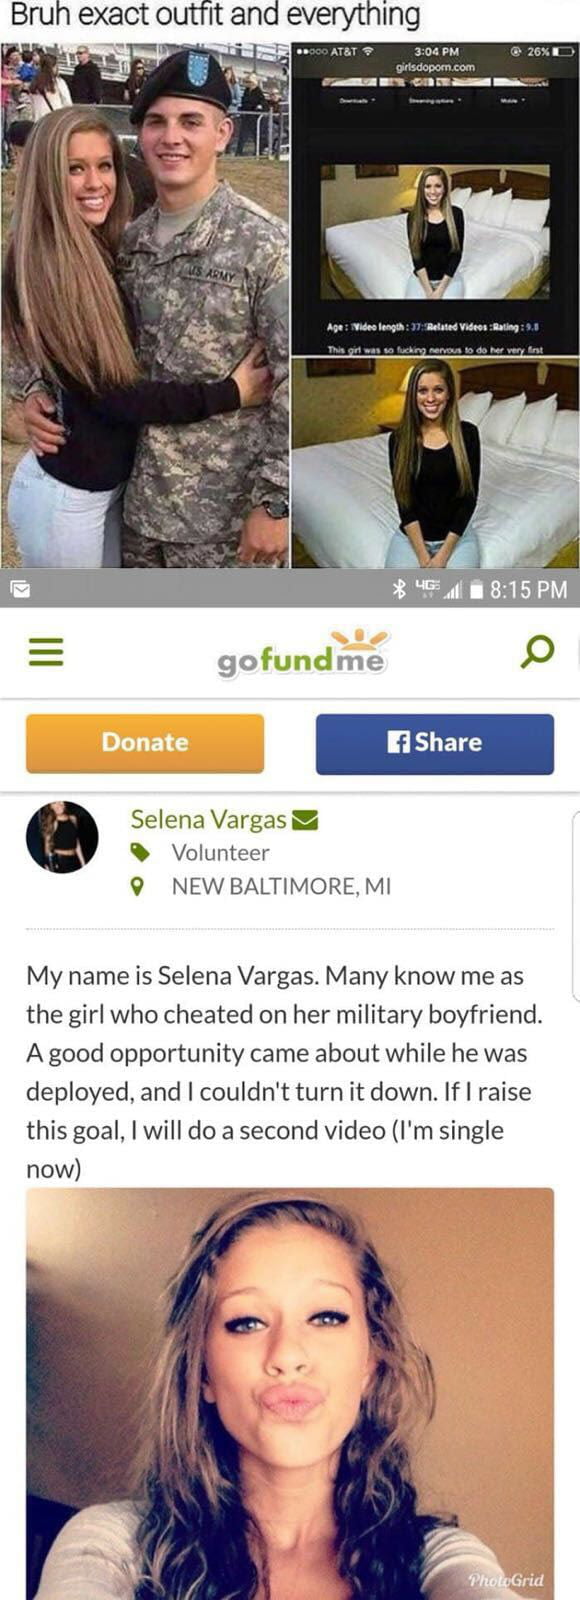 Selena Green Vargas Instagram offender registar